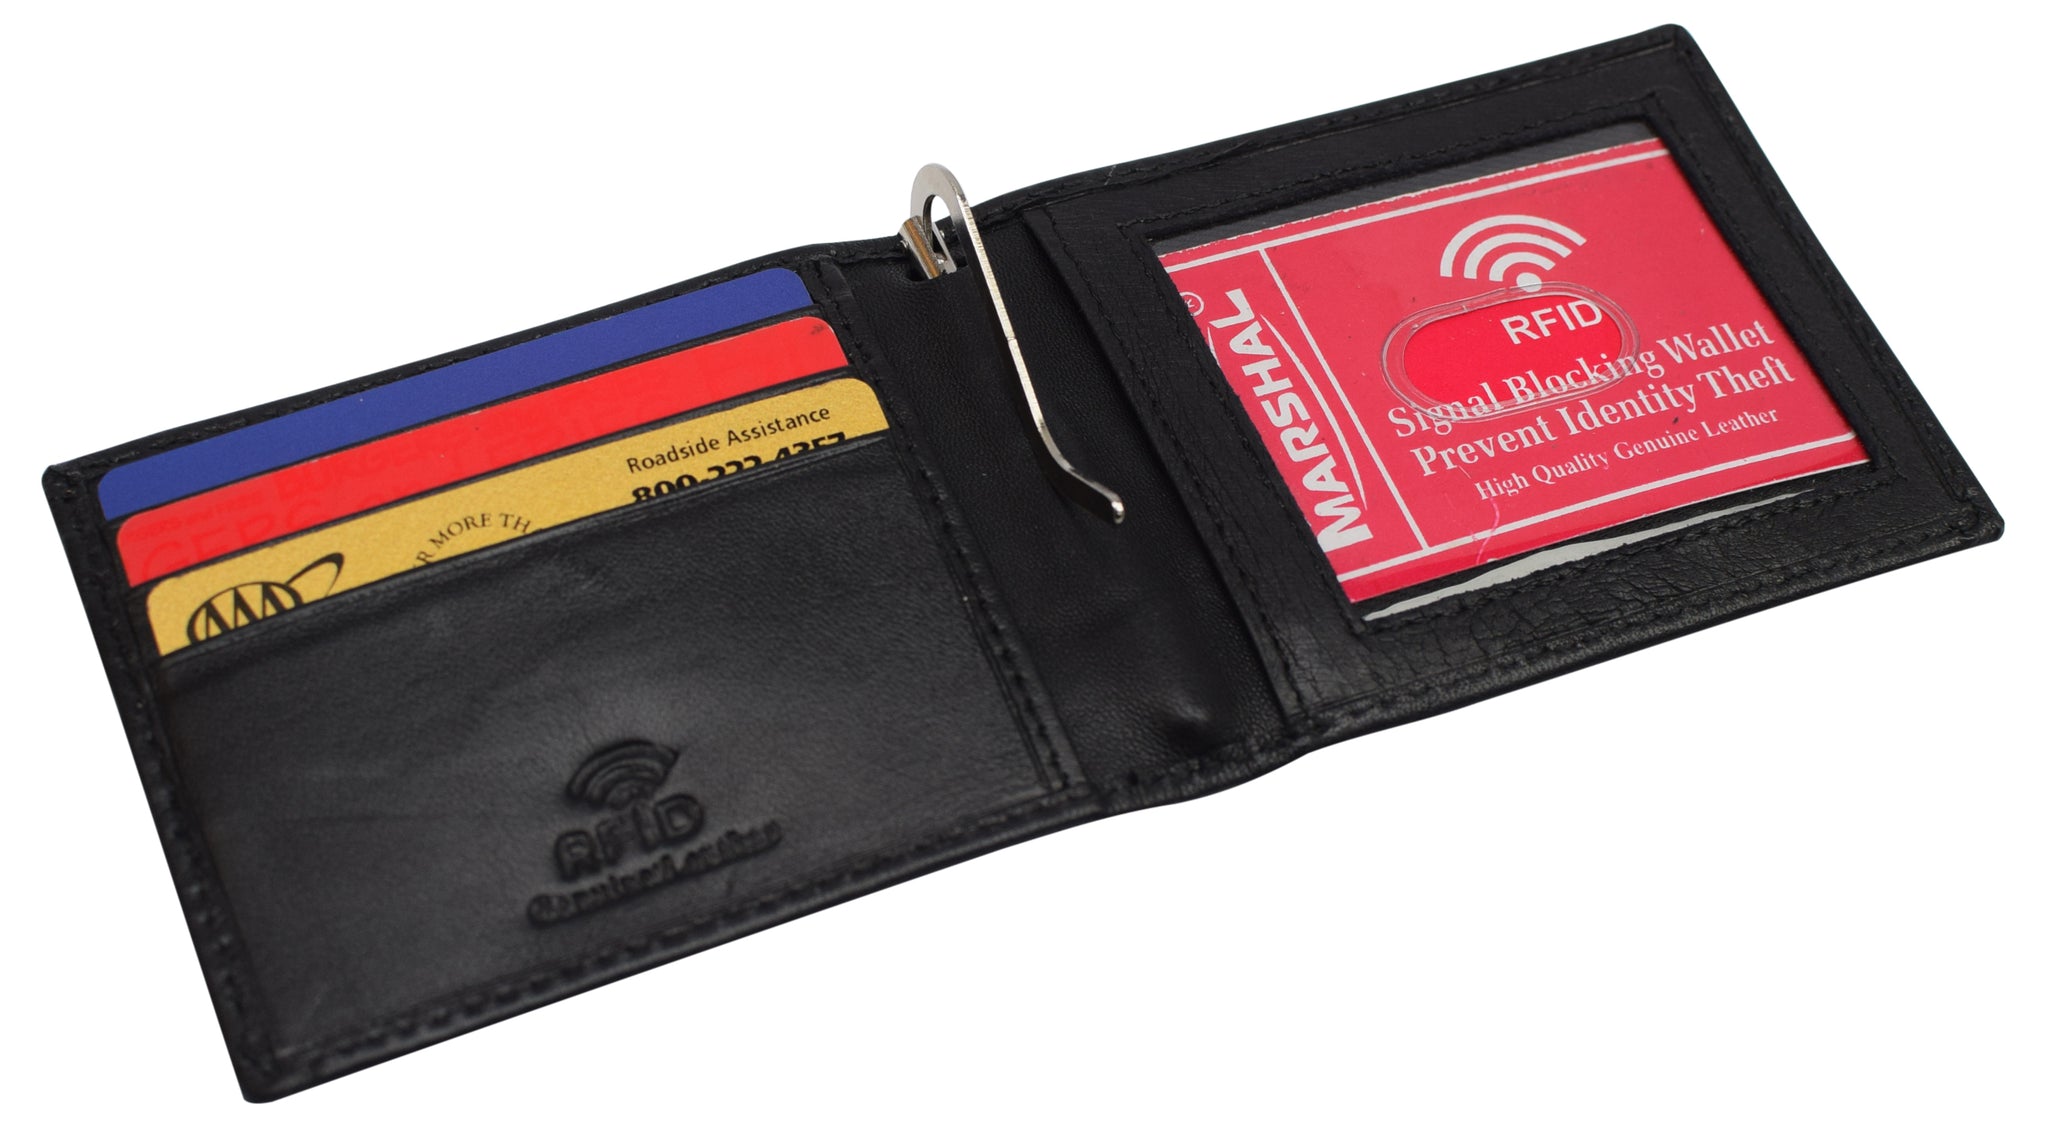 Men Genuine Leather Money Clip Credit Card Case Holder Slim Wallet Front  Pocket